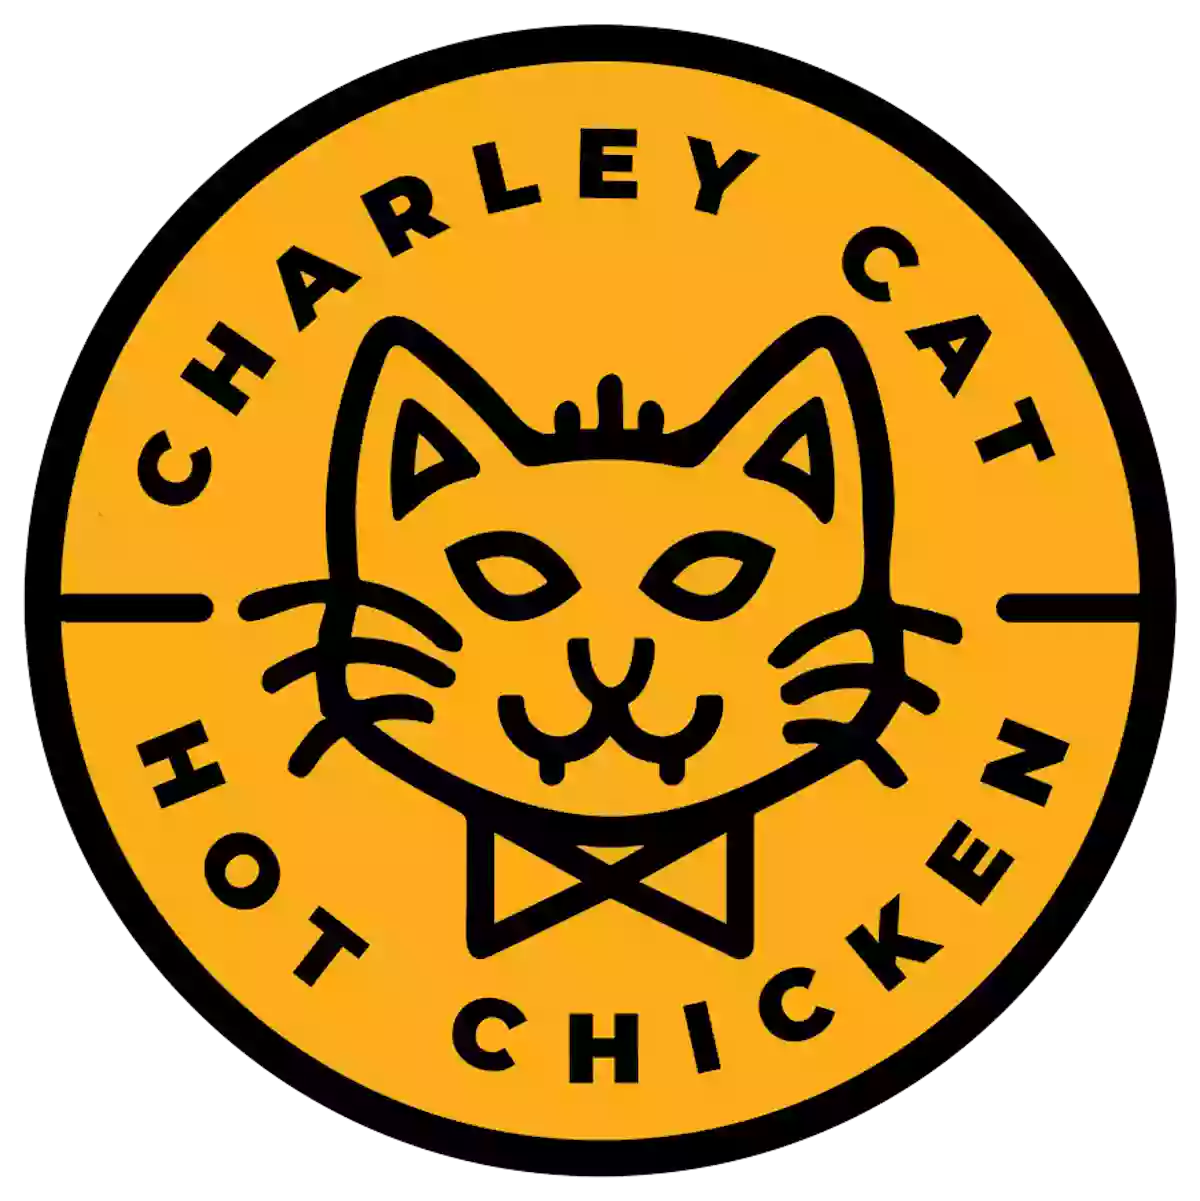 Charley Cat Chicken